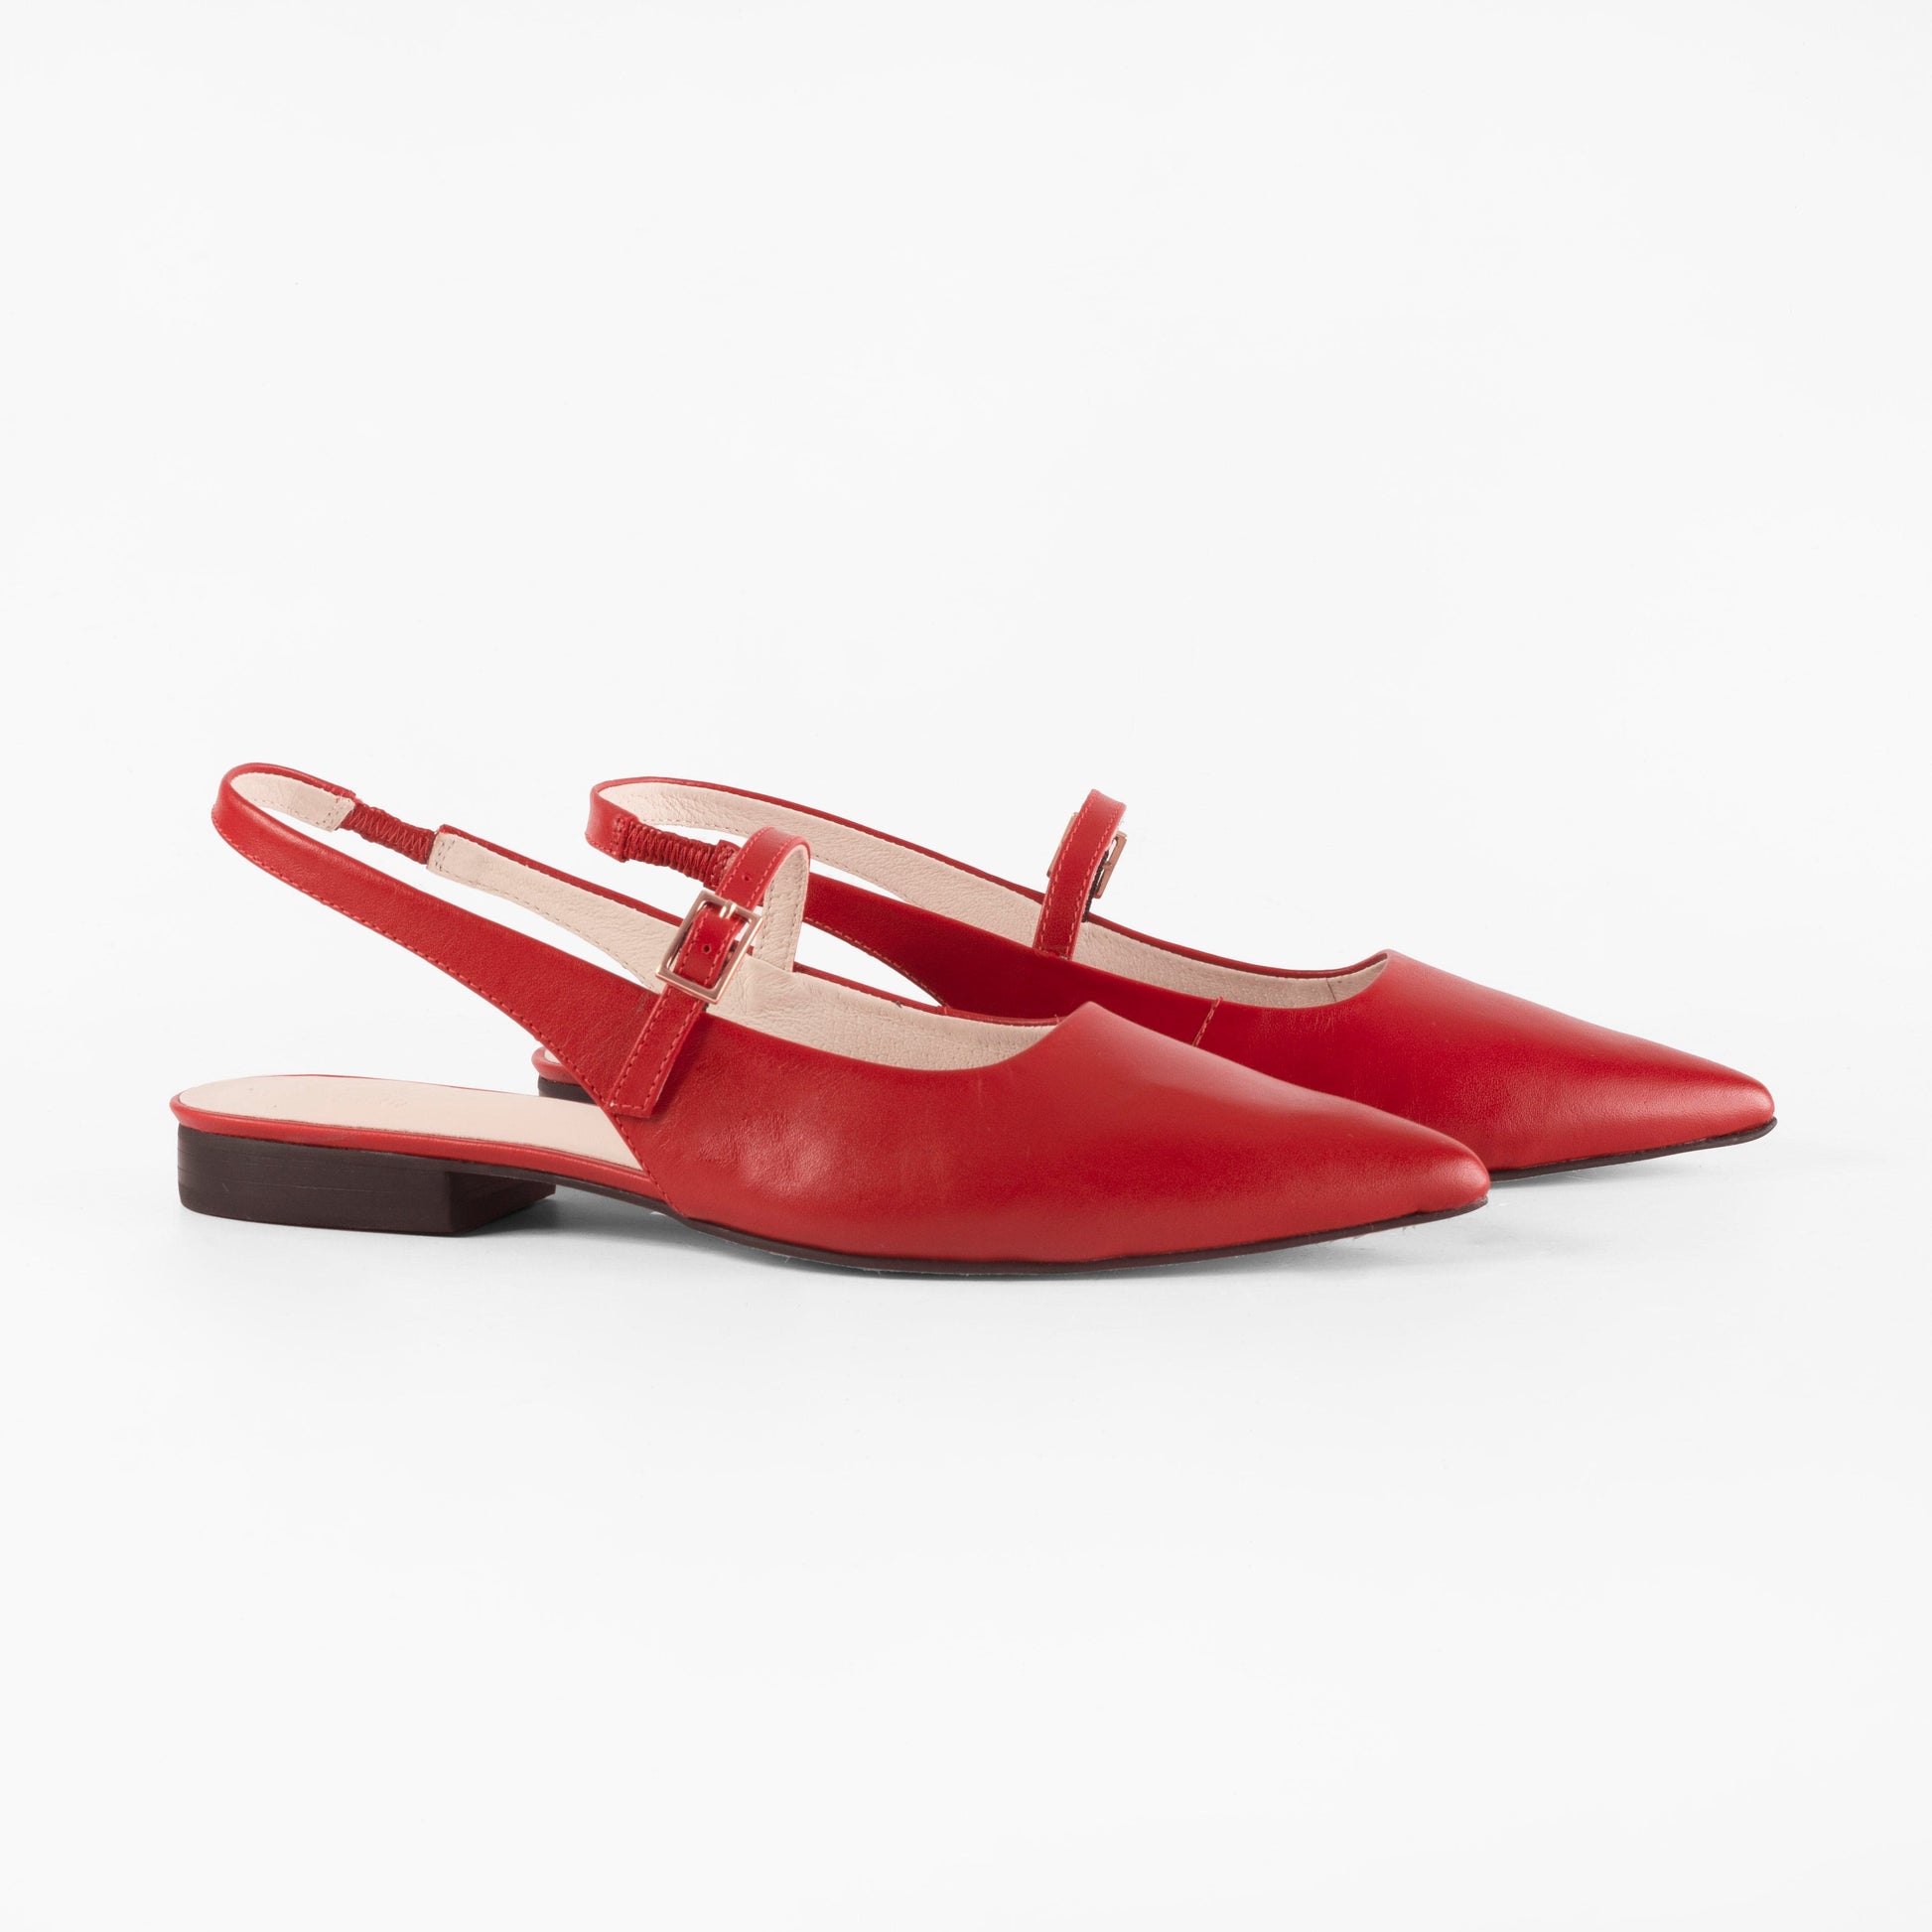 Vinci Shoes Cecilia Red Ballerinas